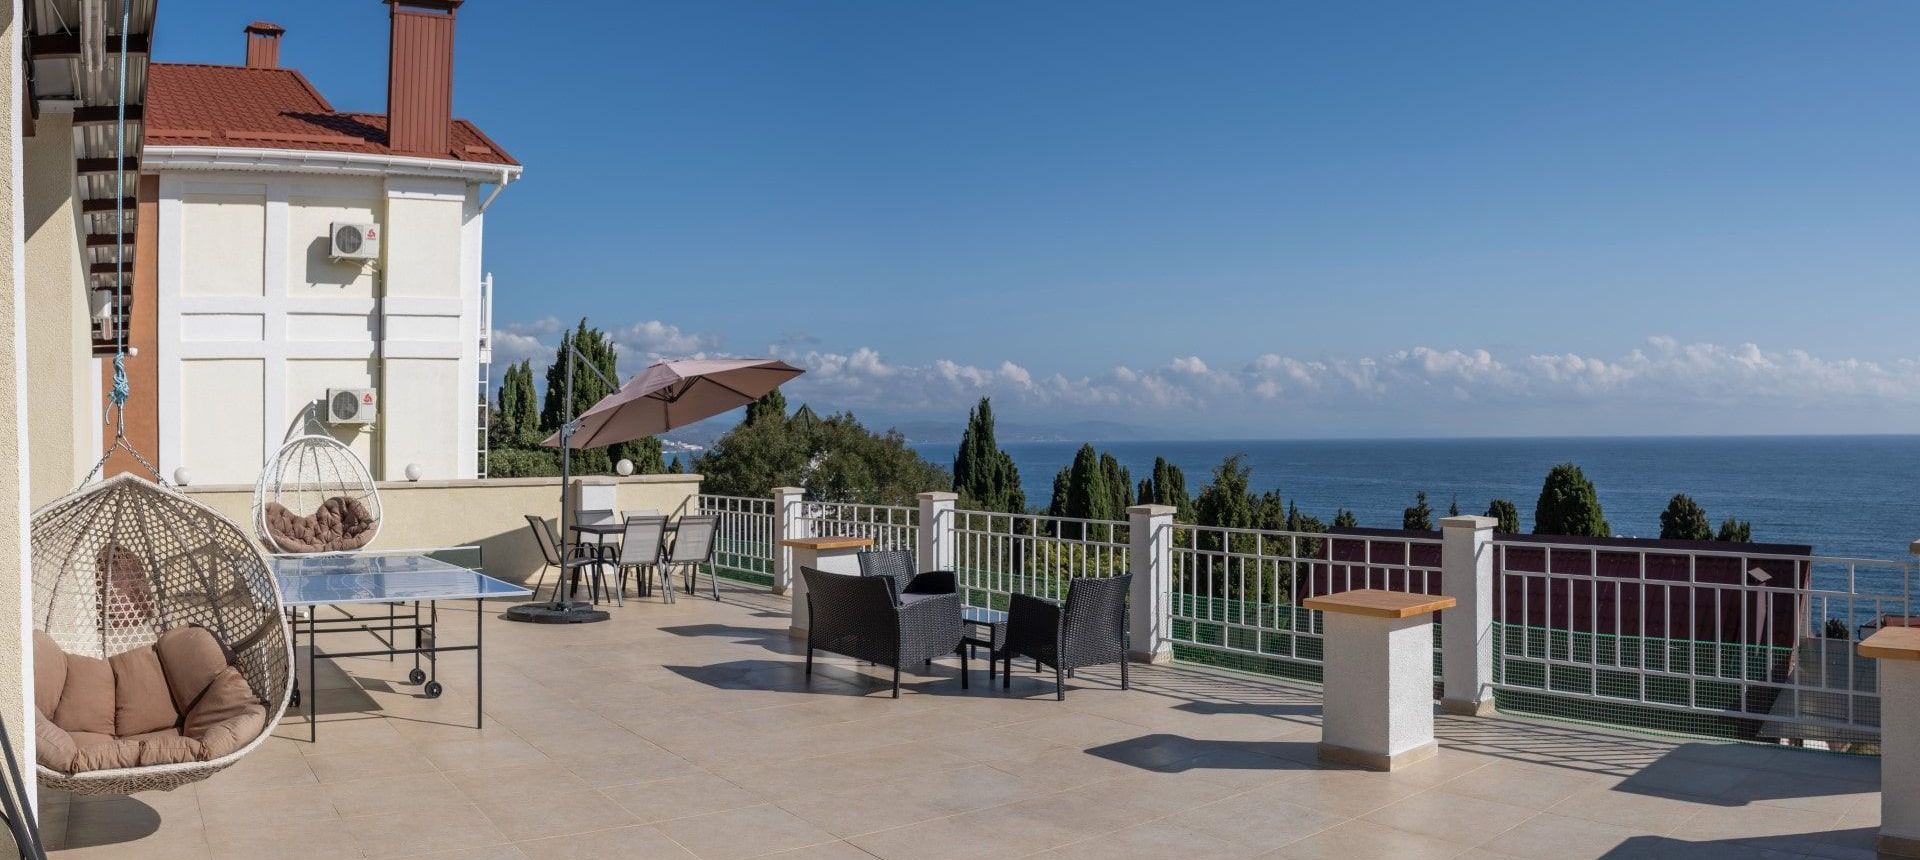 Проведите незабываемый отдых на берегу моря в отеле Villa Mira